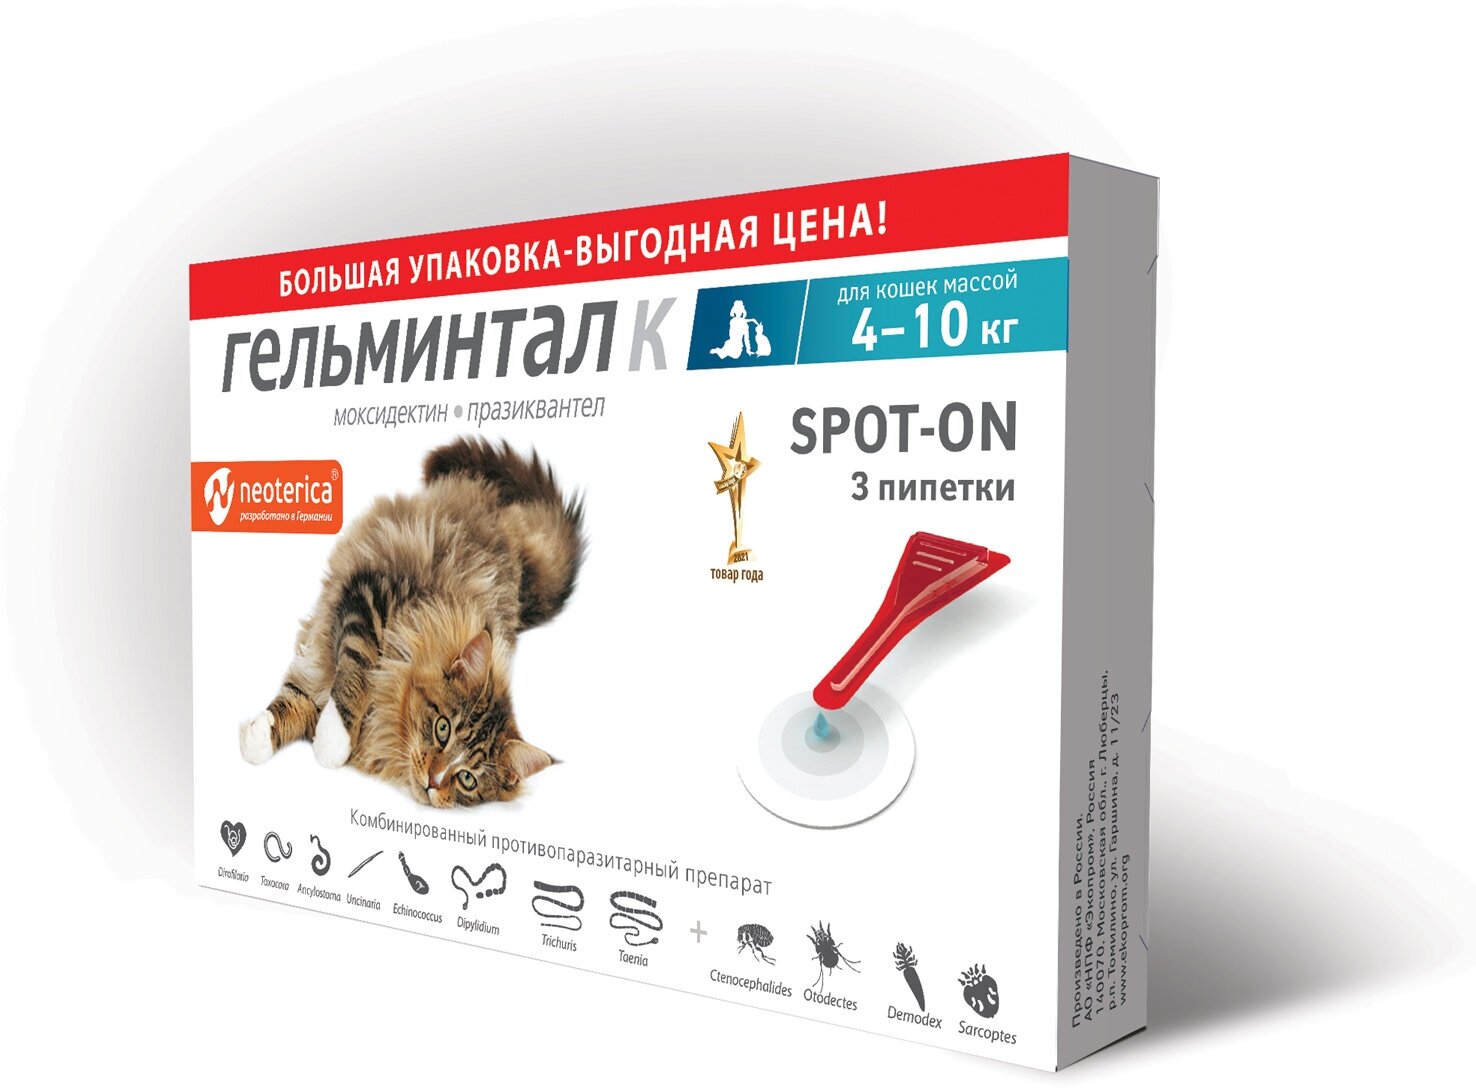 Капли на холку Гельминтал Spot-on для кошек 4-10 кг от гельминтов 3 пипетки